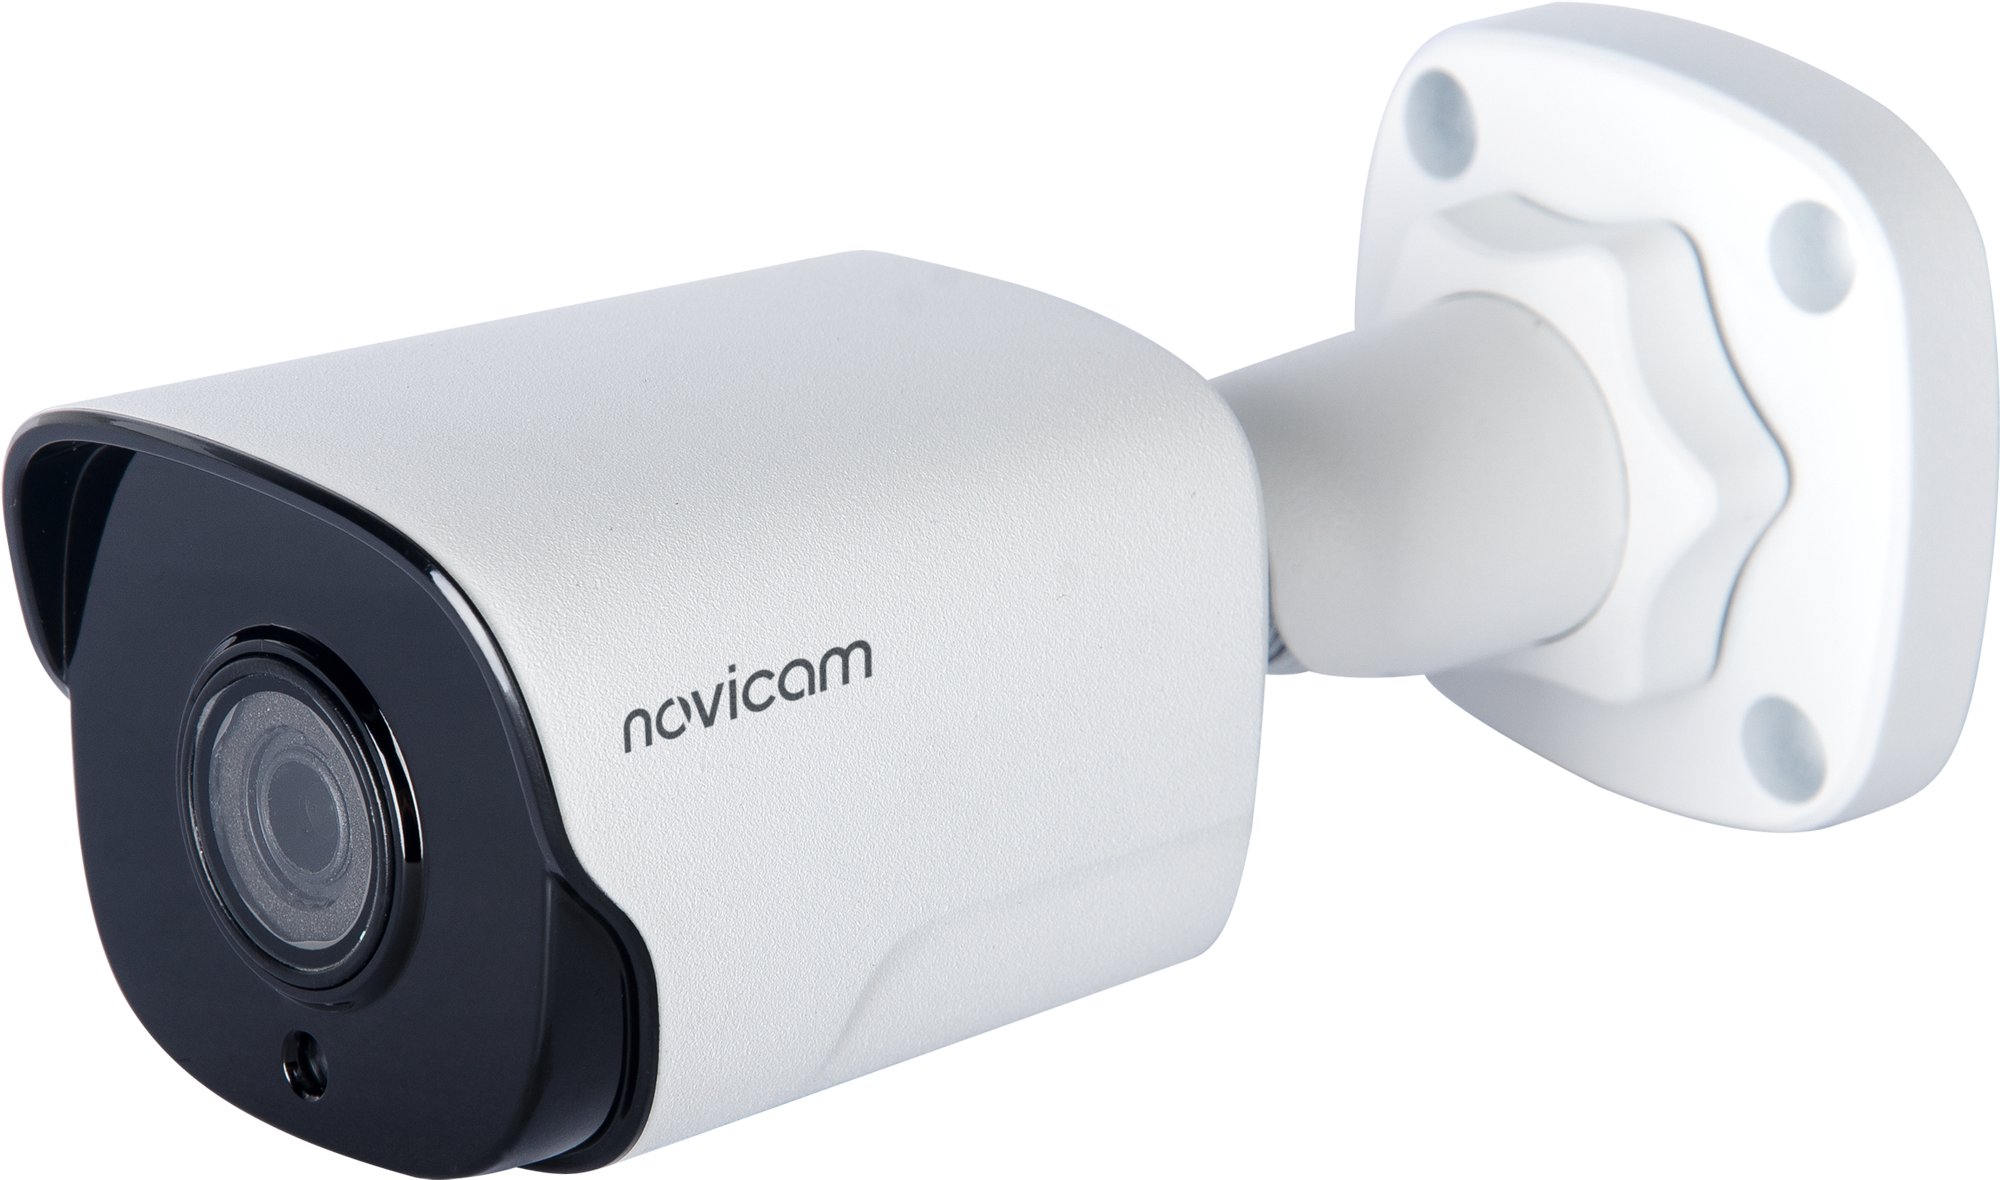 LUX 53M Novicam v.1080V - IP видеокамера пуля, матрица 1/2.8" CMOS, 5 Мп 20 к/с, объектив фиксированный 2.8 мм